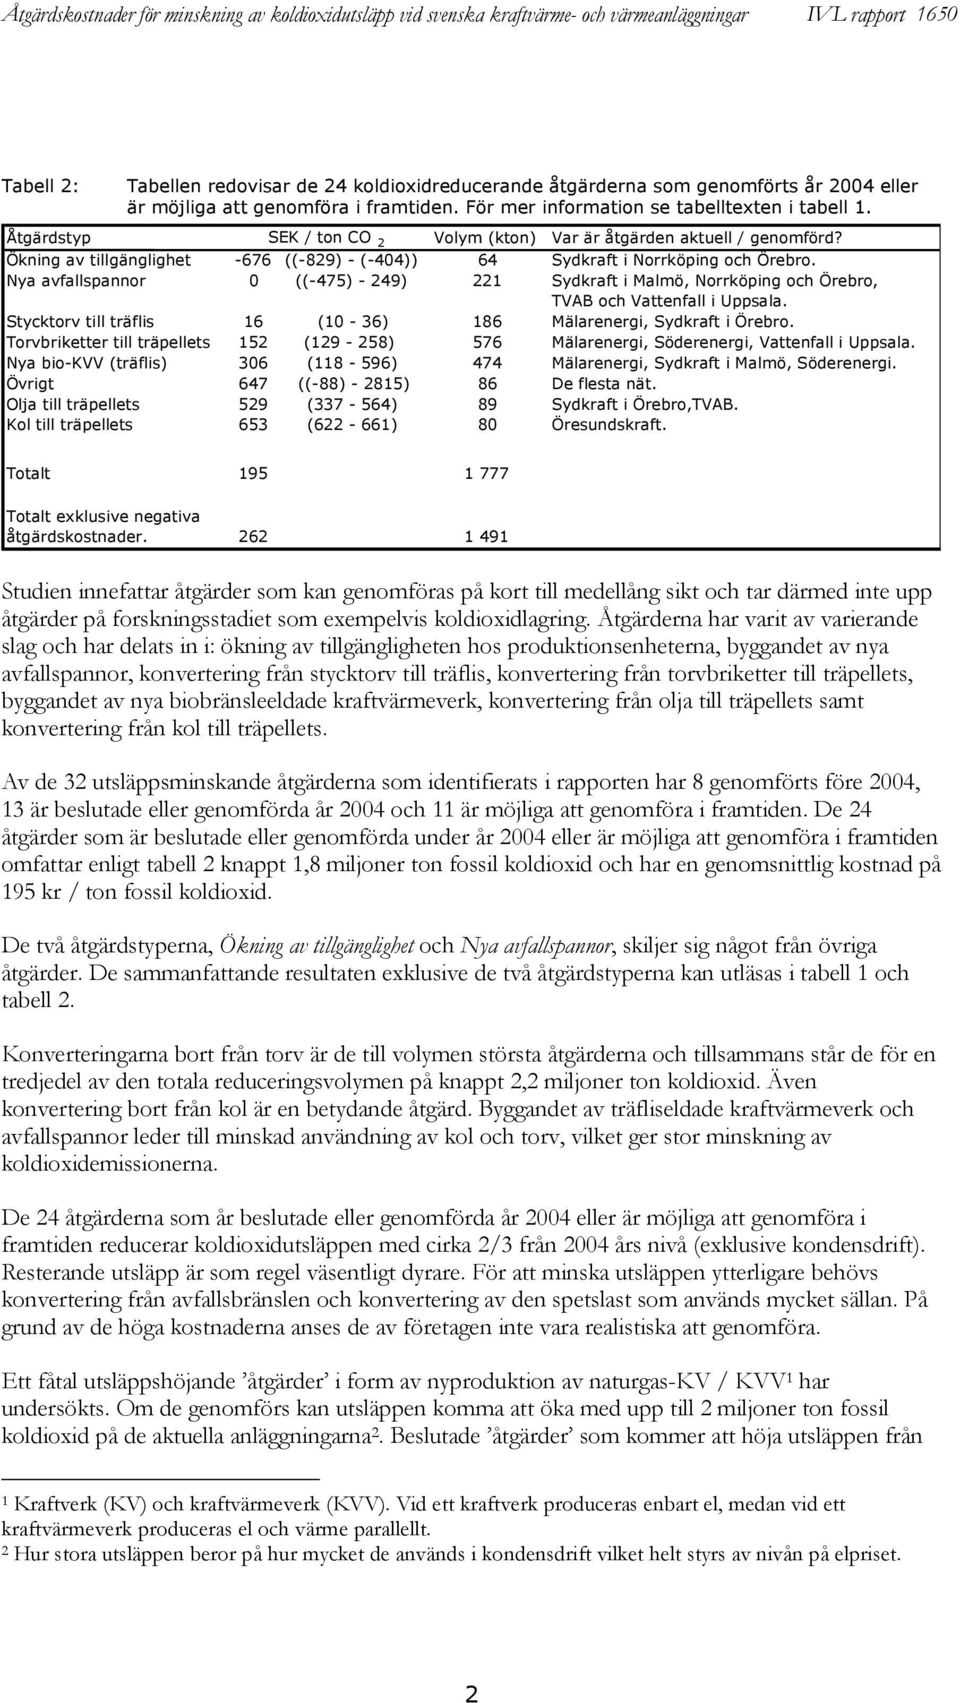 Nya avfallspannor 0 ((-475) - 249) 221 Sydkraft i Malmö, Norrköping och Örebro, TVAB och Vattenfall i Uppsala. Stycktorv till träflis 16 (10-36) 186 Mälarenergi, Sydkraft i Örebro.